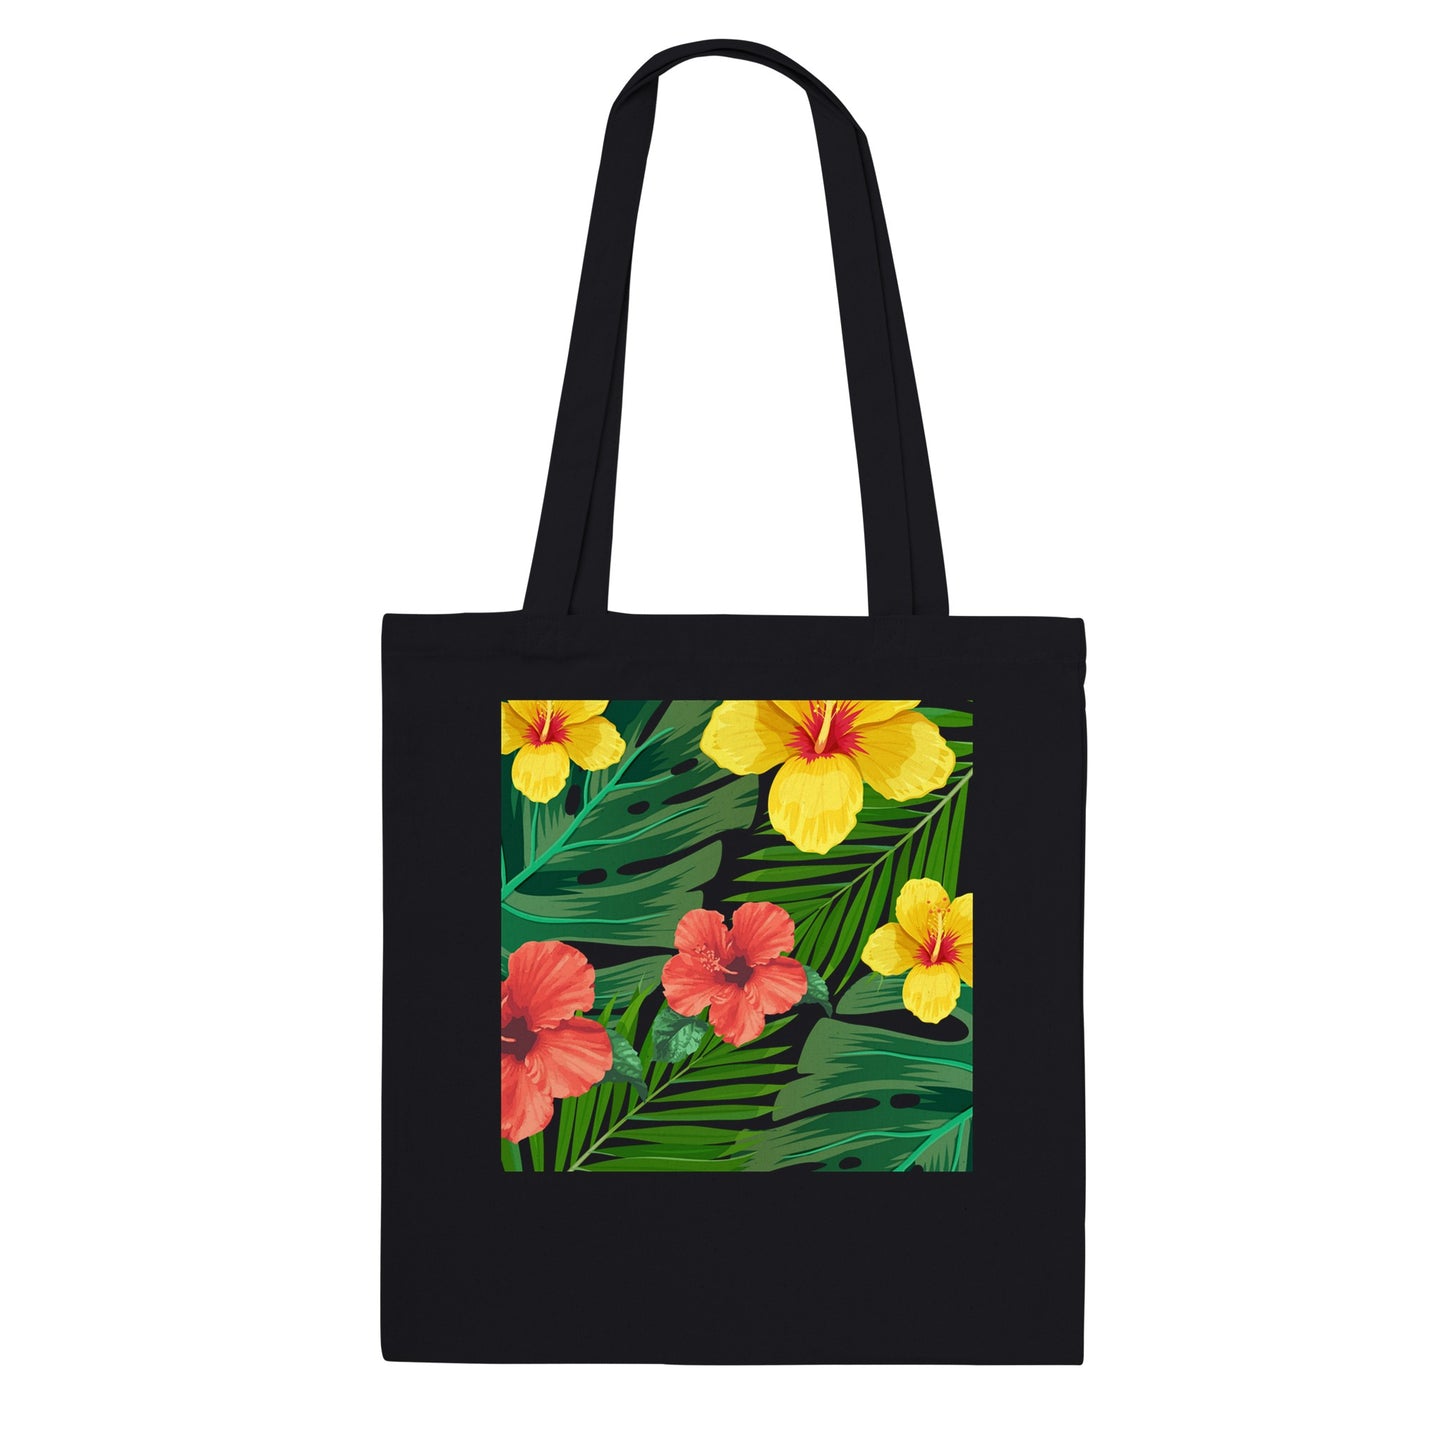 Bolsa de tela negra, bolsa de tela de flores, bolsa para compras